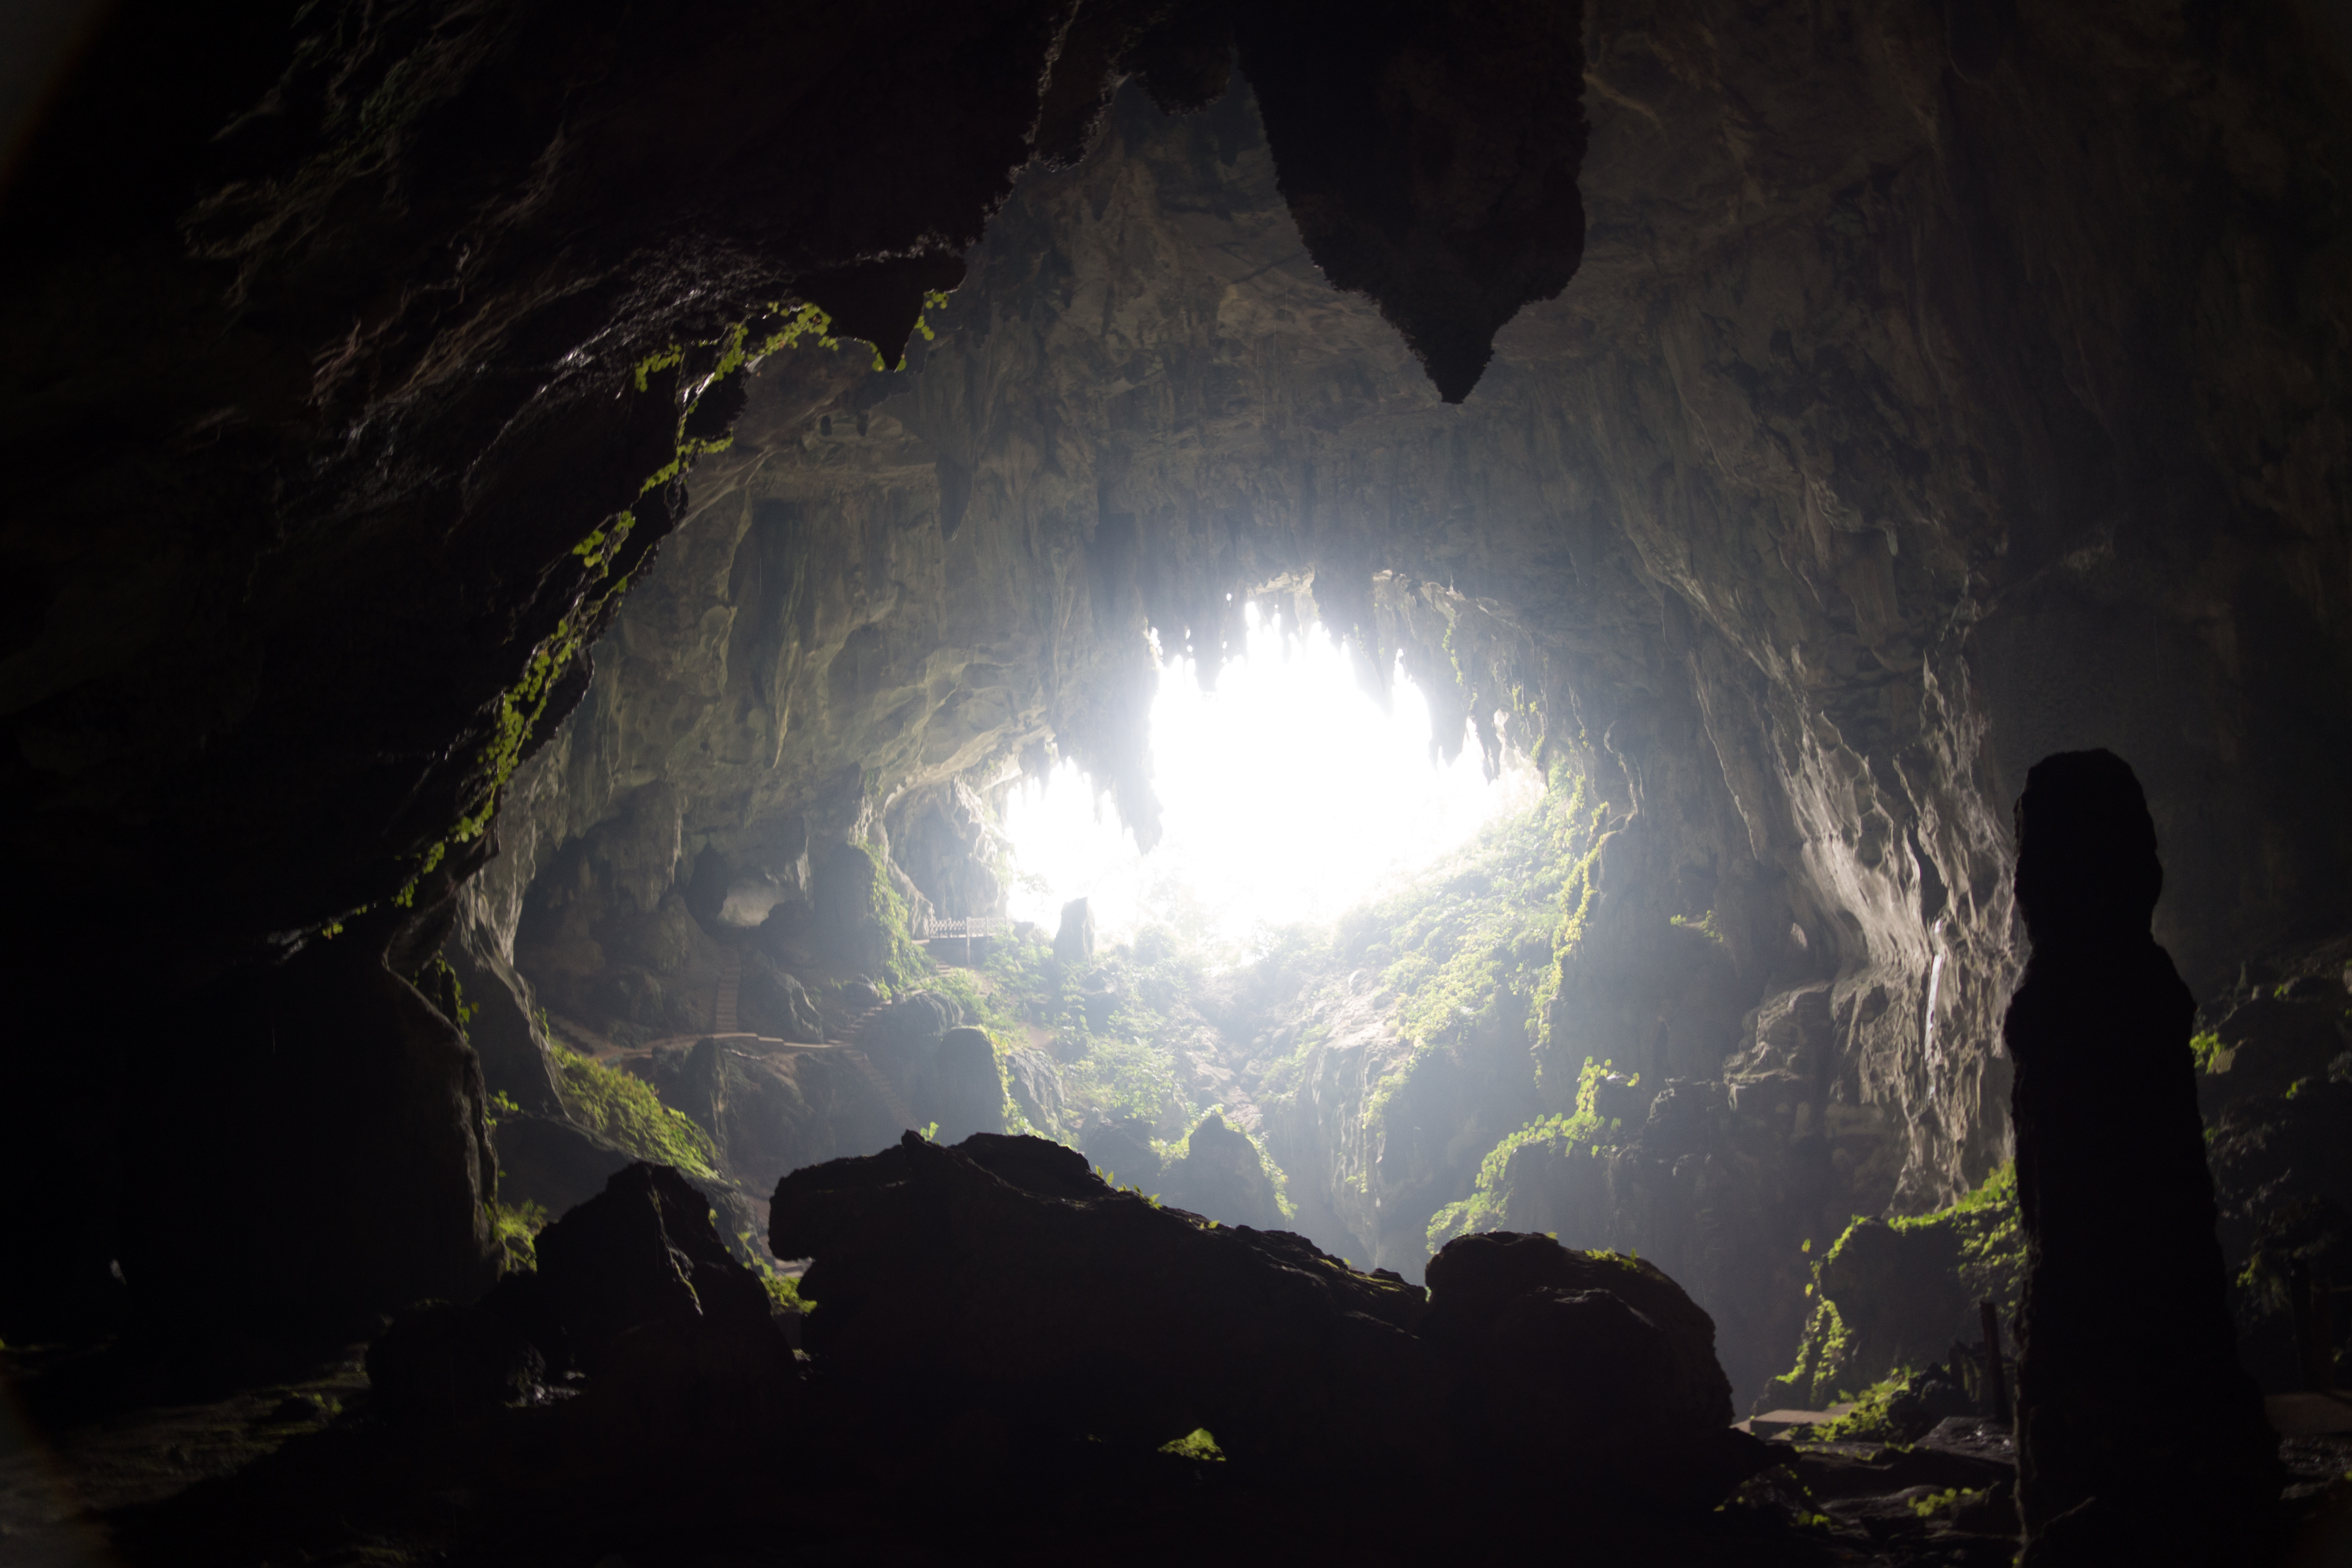 Cave v. Абхазия Крубера. Пещера Крубера в Абхазии. Пещера Крубера-Воронья. Пещера Веревкина в Абхазии.